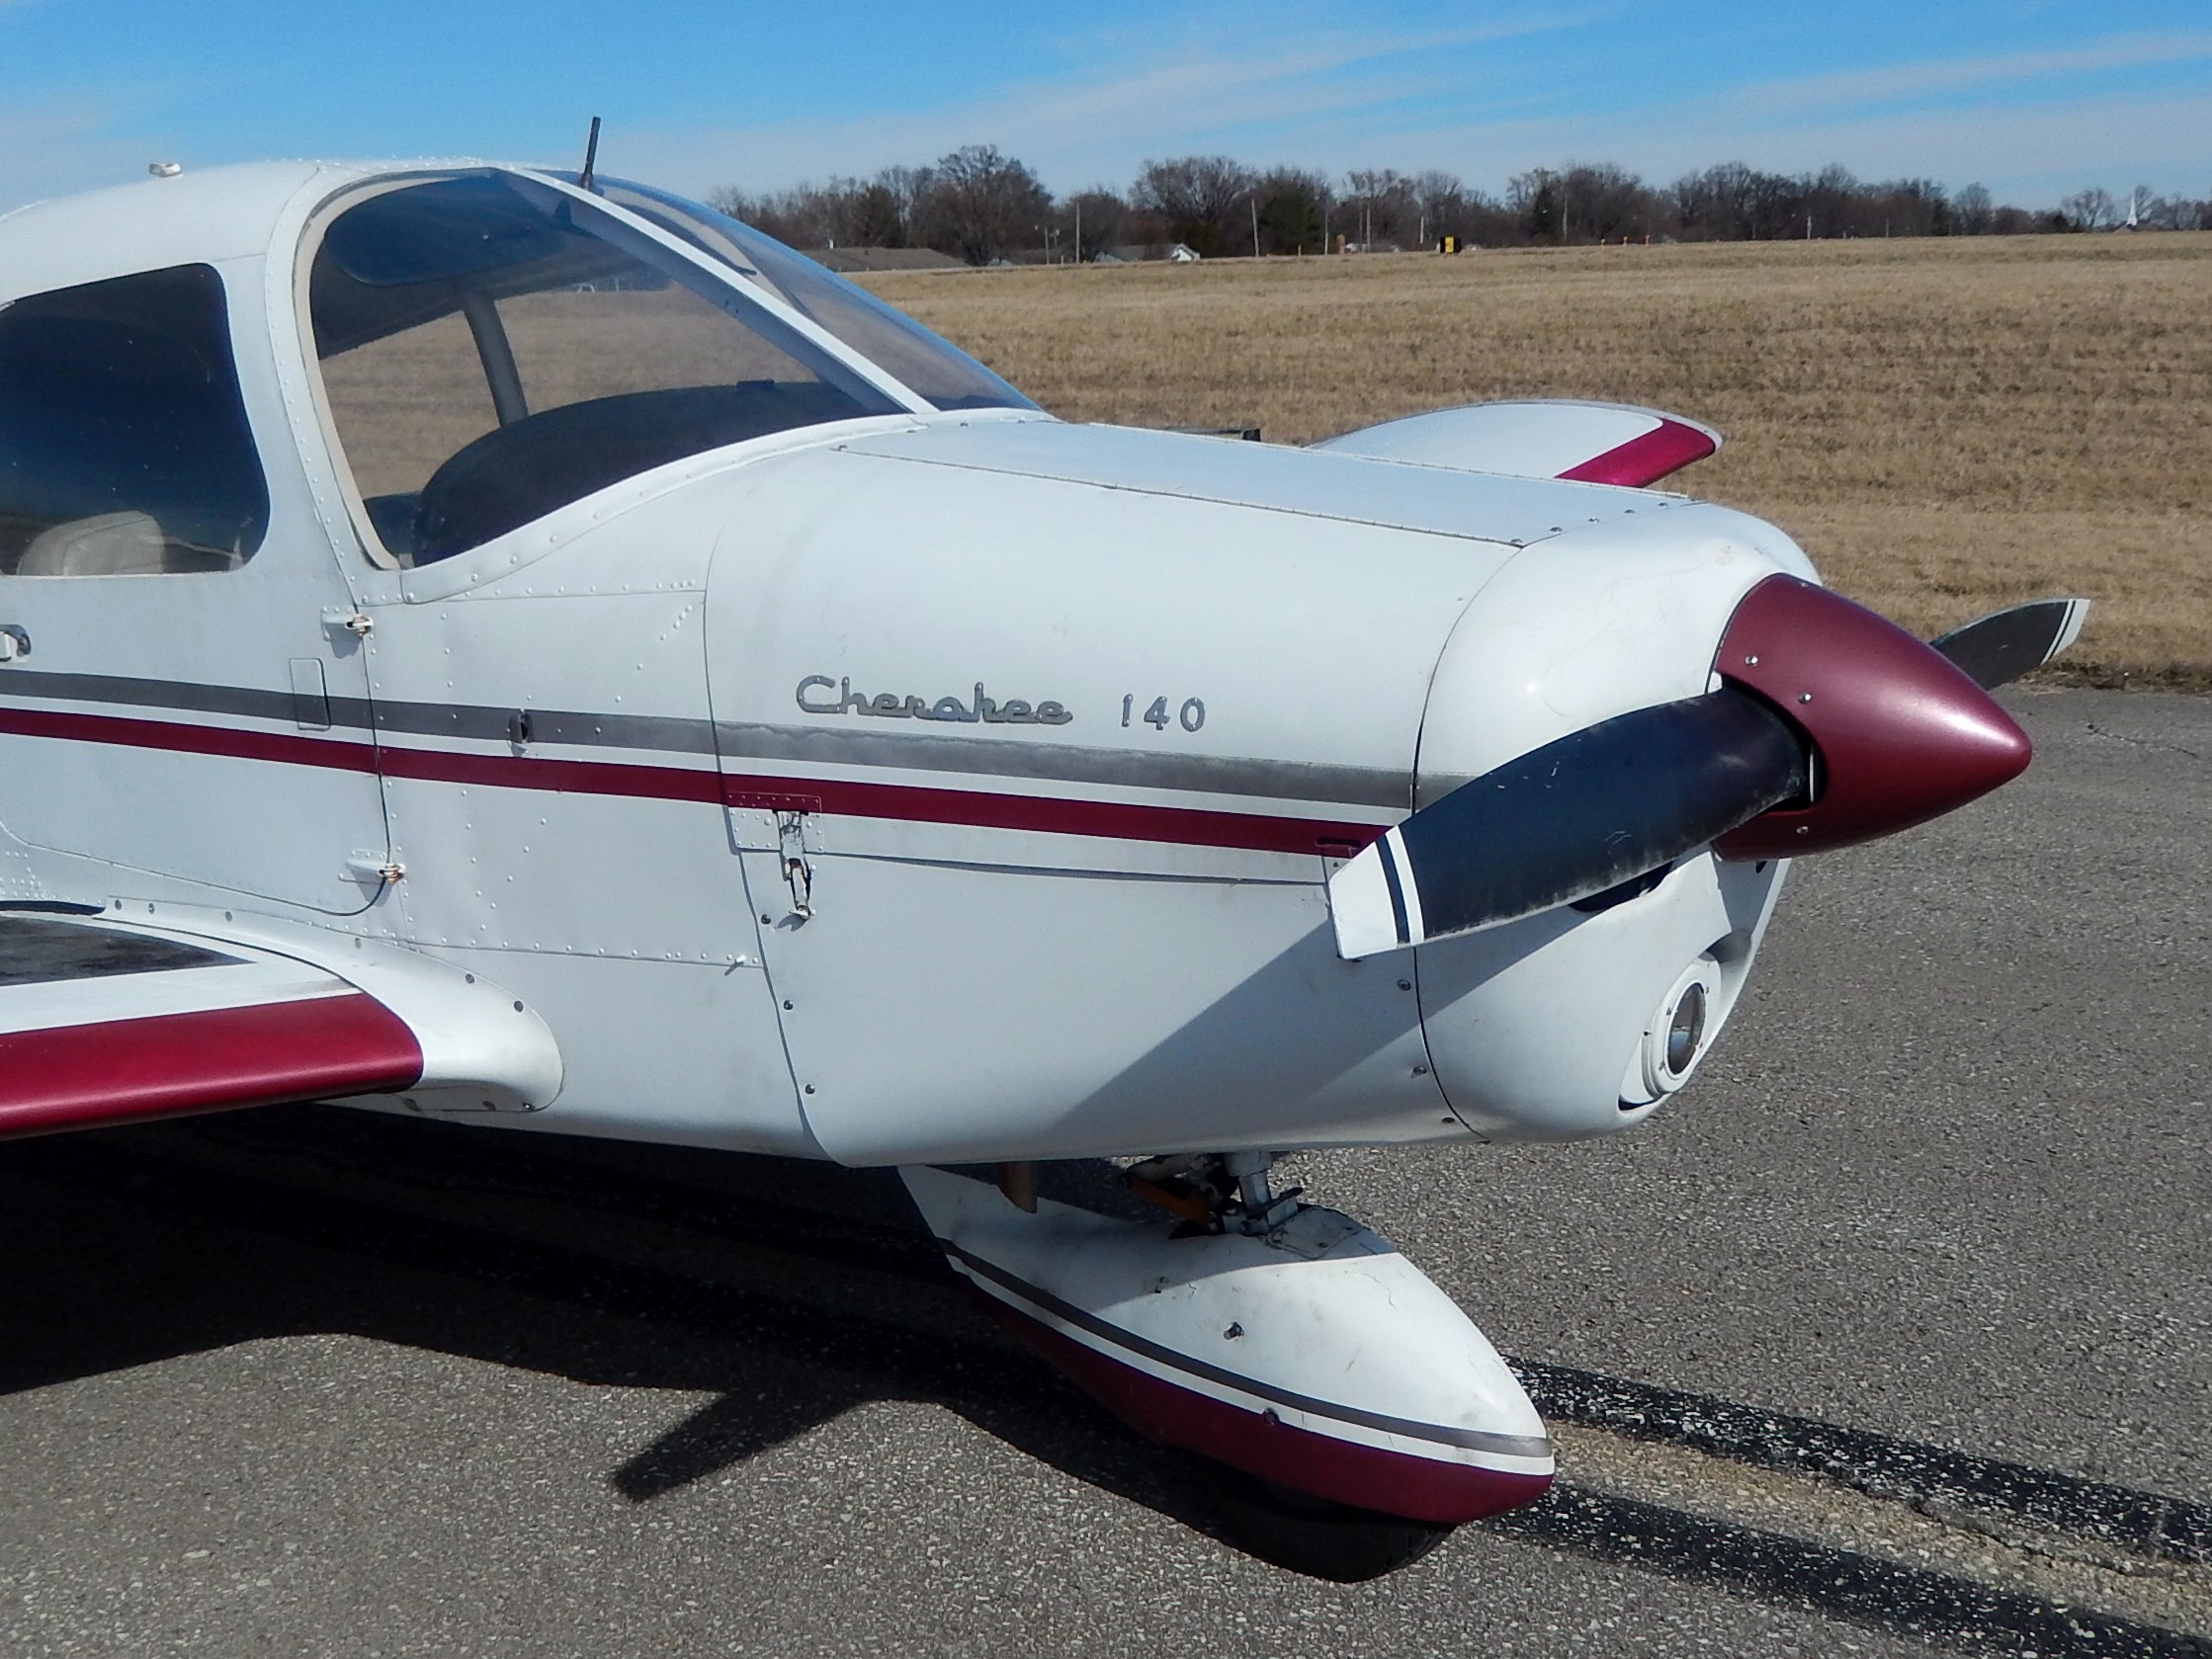 Piper Cherokee 140 - N7523R